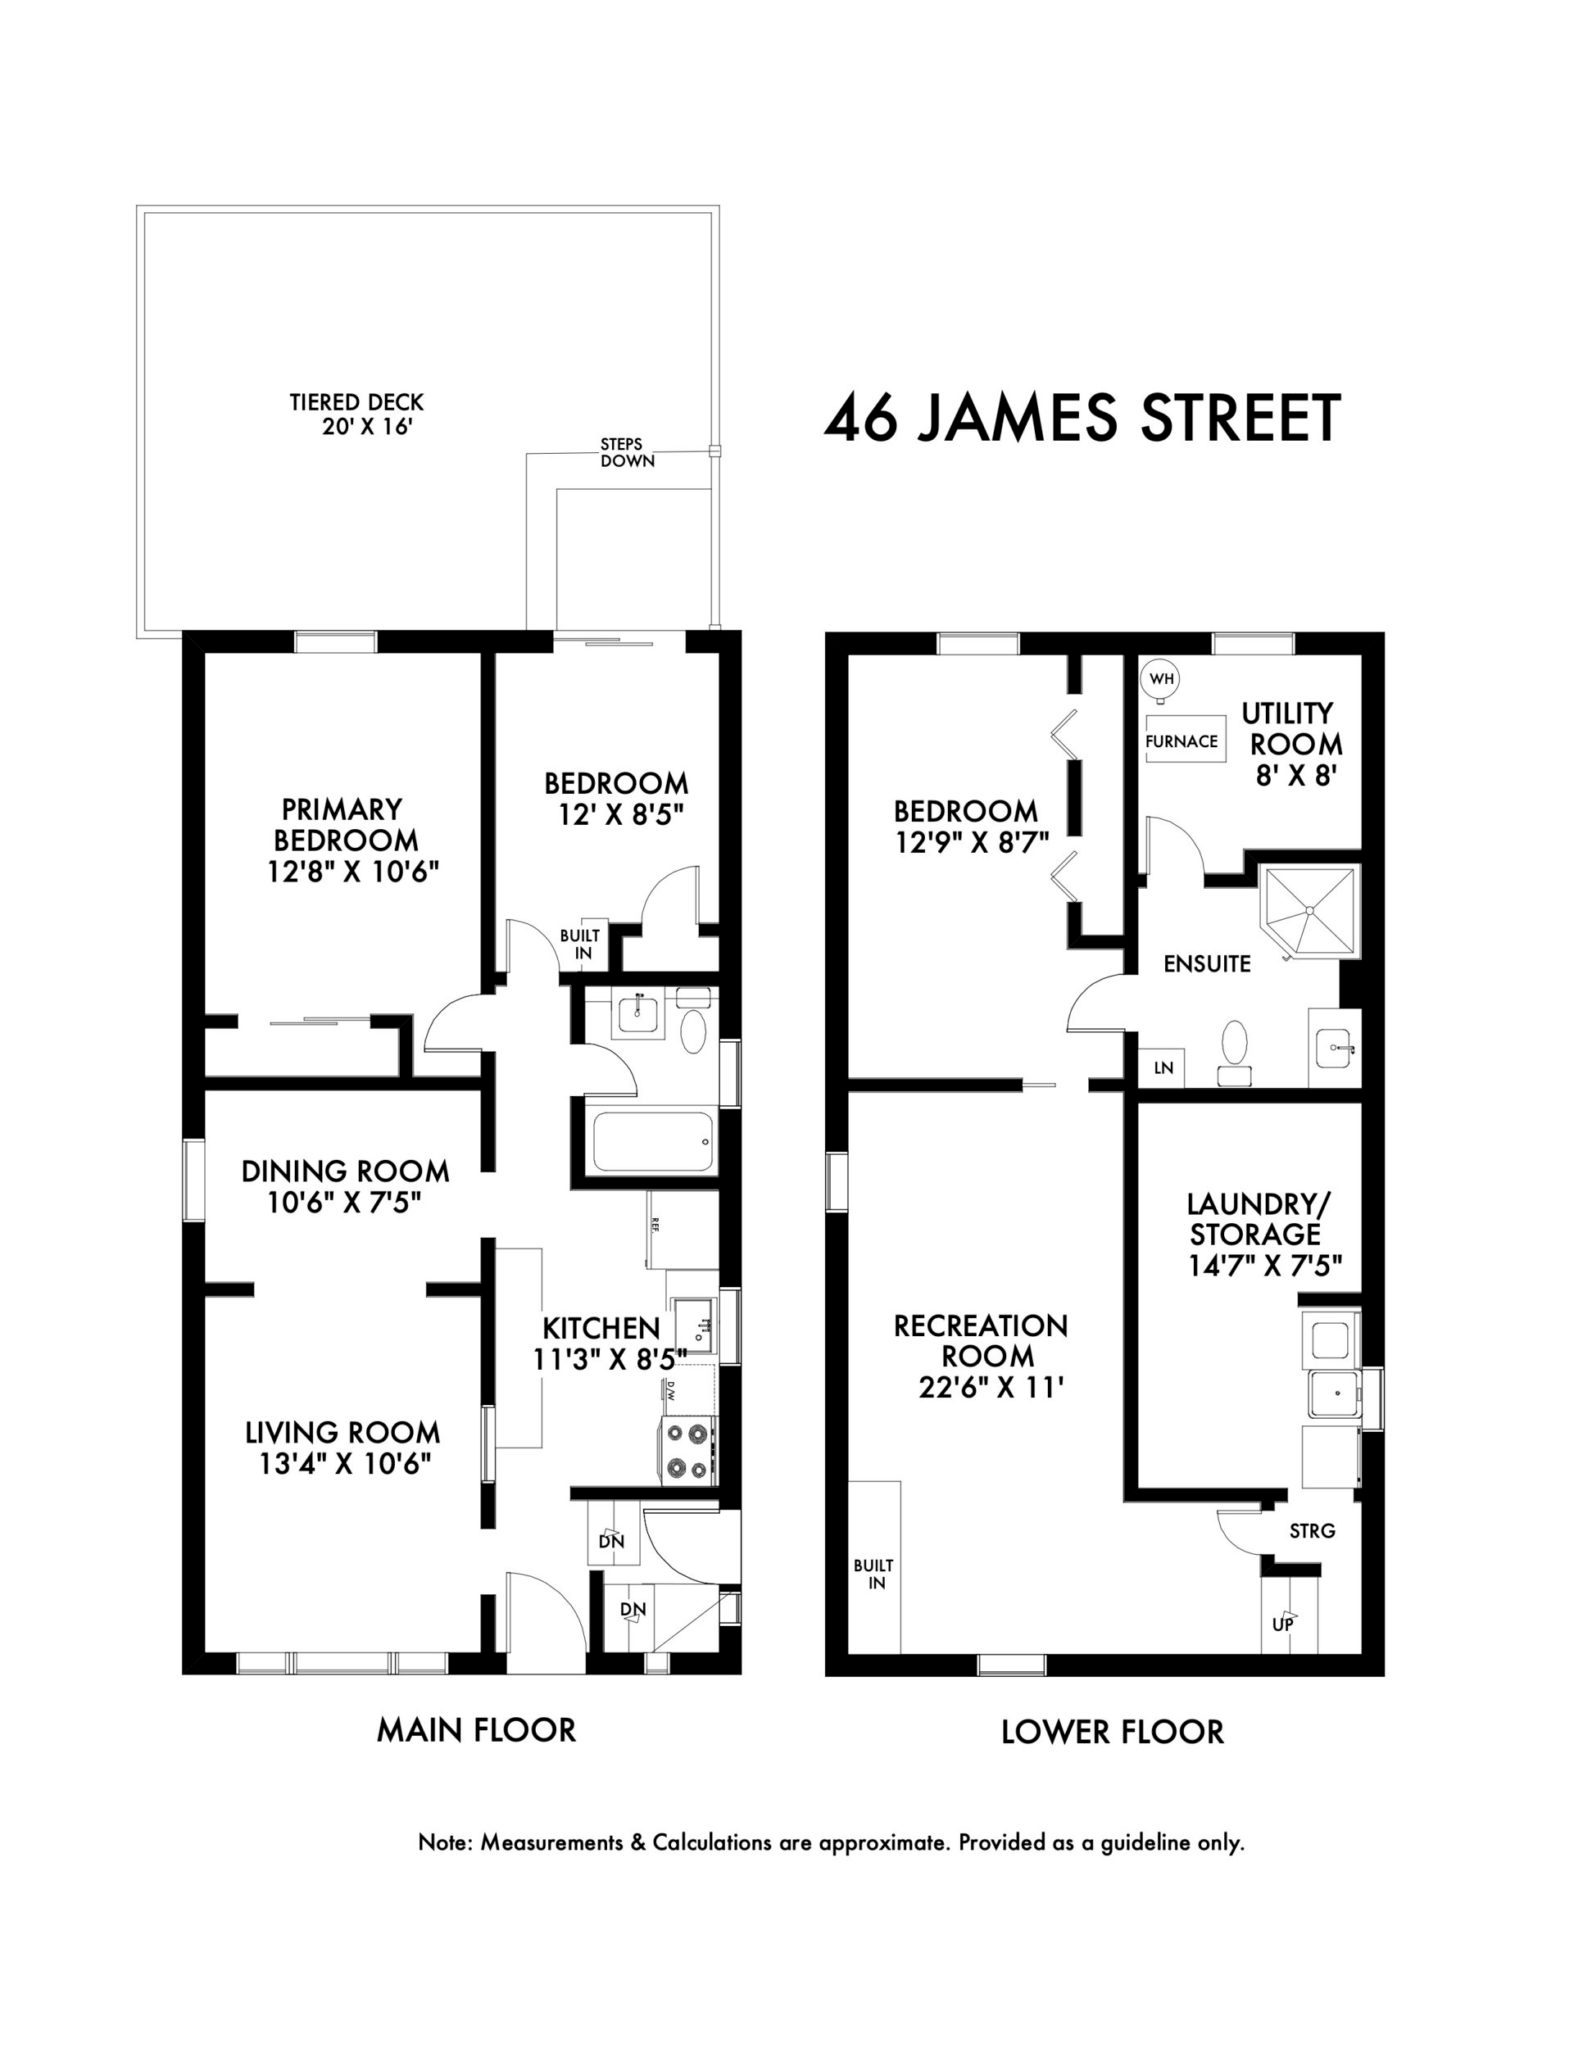 46 James Street Floorplan